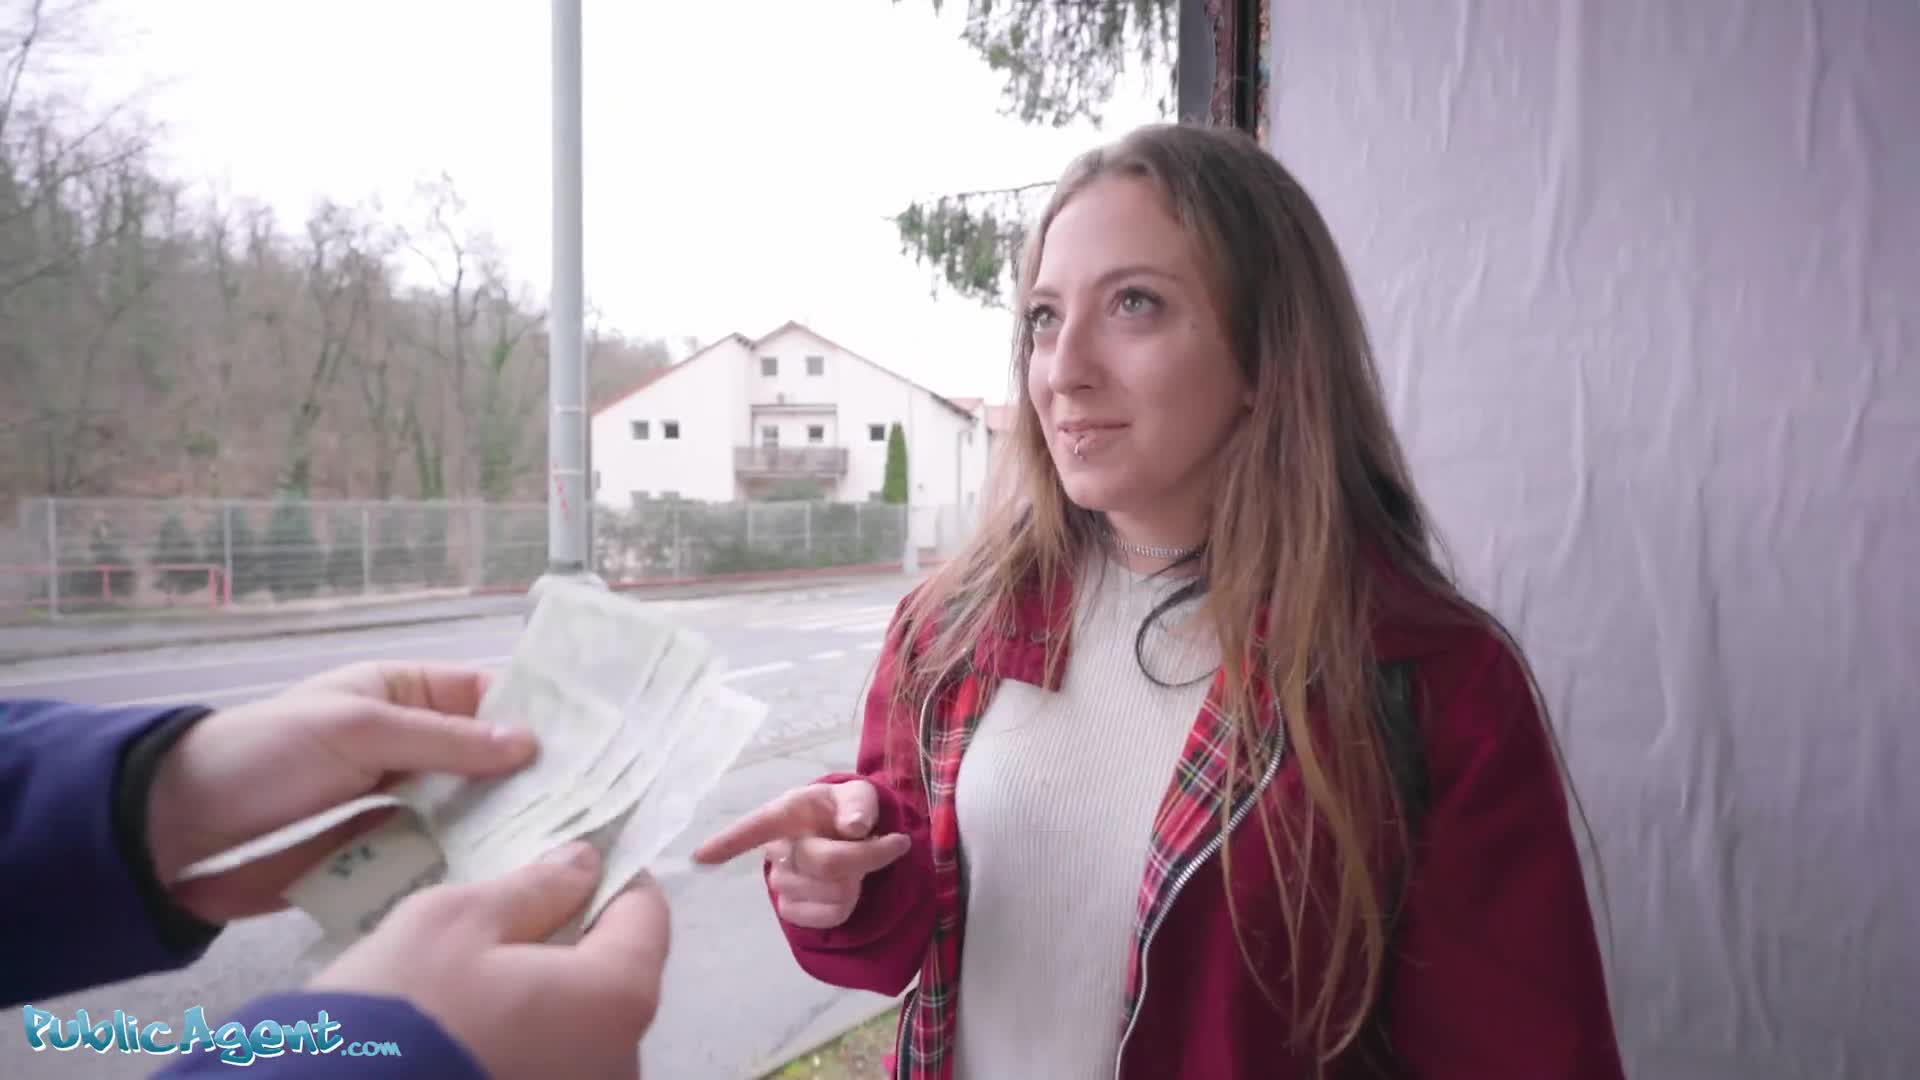 Una zorra española de tetas pequeñas espera el autobús pero conoce a un extraño que le ofrece dinero a la puta que accede a follar en público, y se alejan un poco Foto